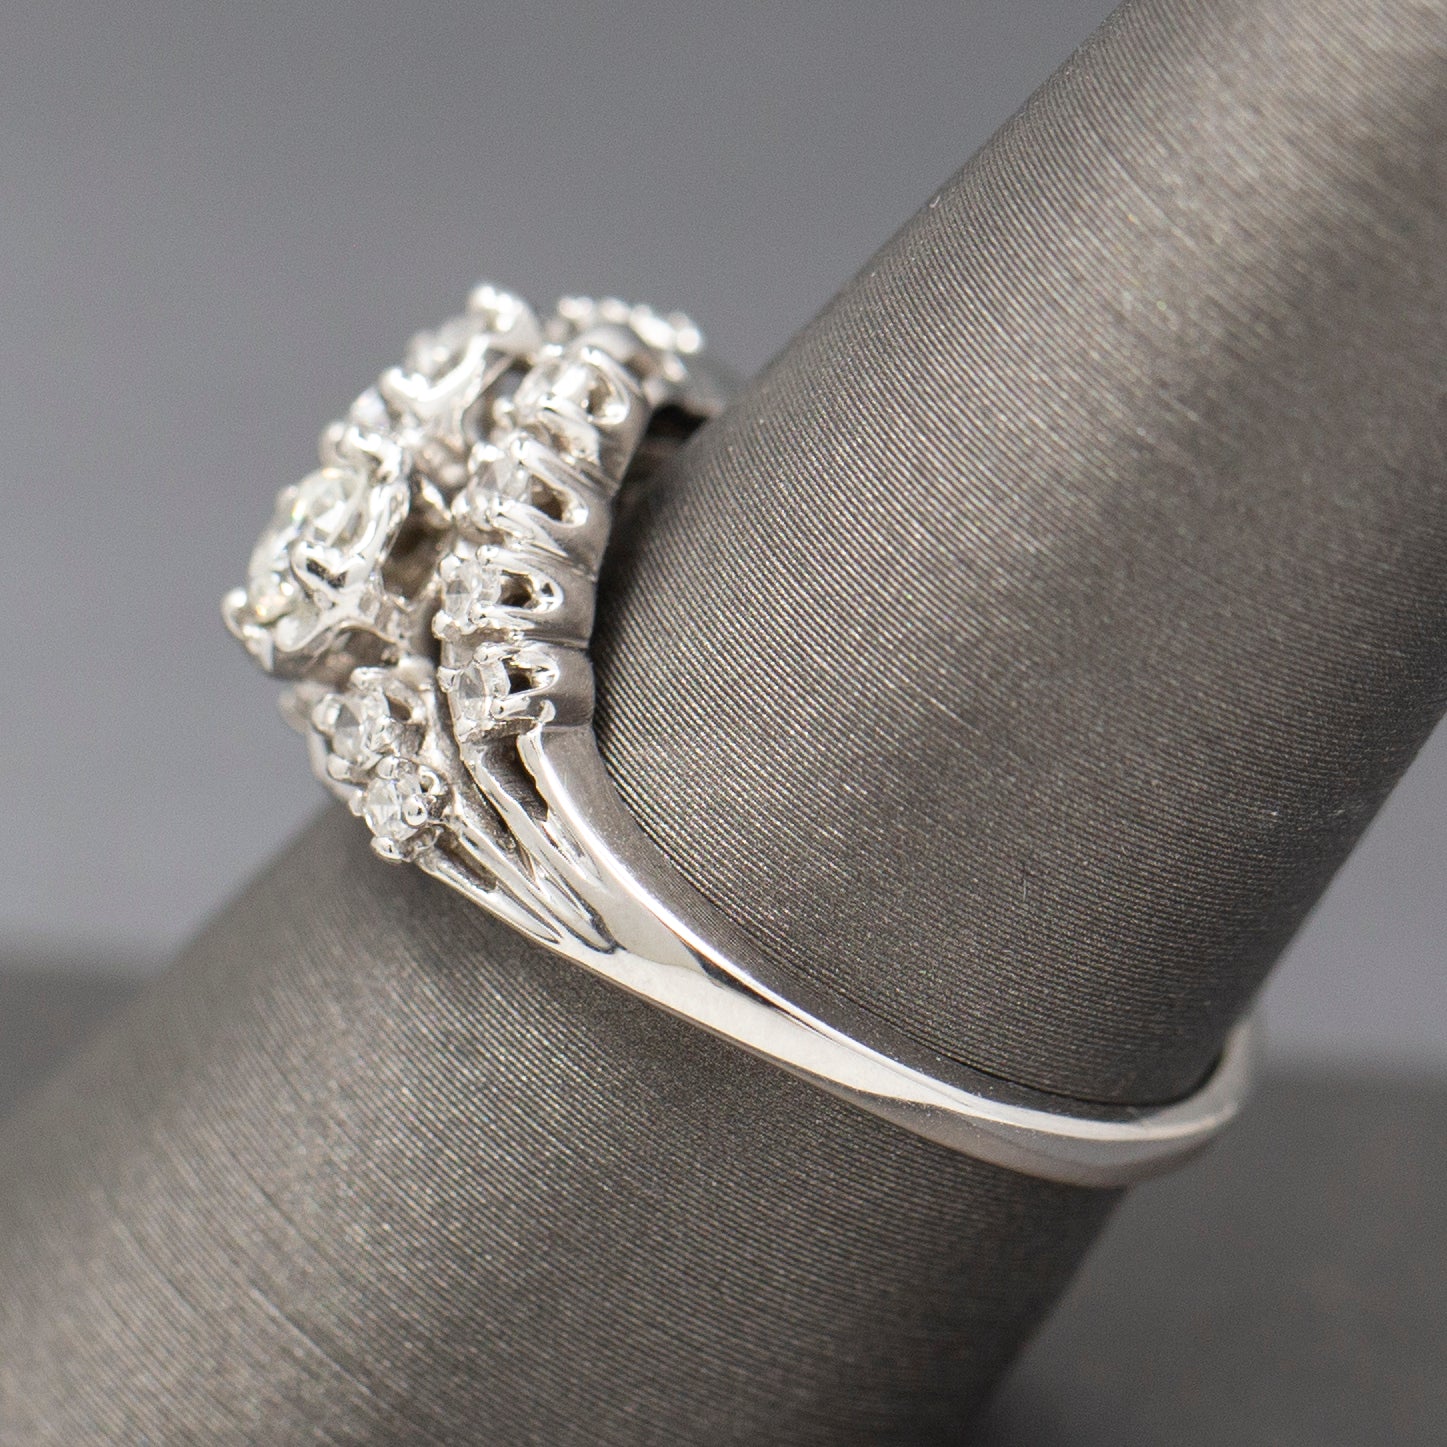 Vintage Two Stone Moi et Toi Diamond Engagement Ring in 14k White Gold